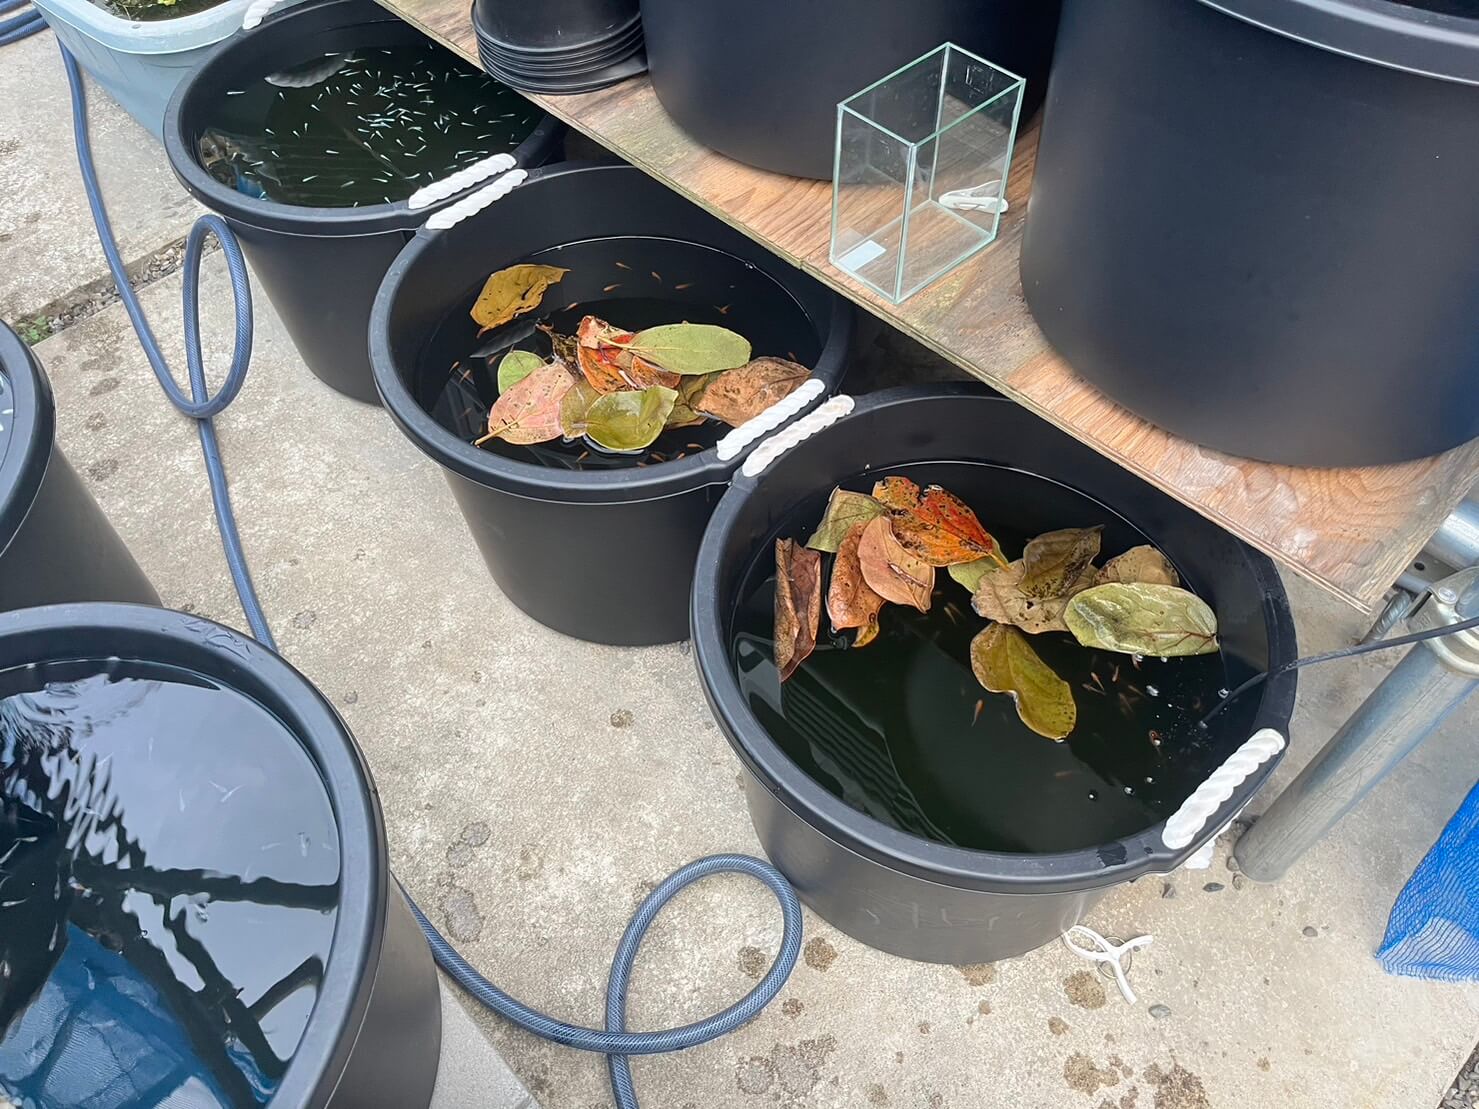 柿の葉っぱ(メダカの冬越し用)とメダカの飼育容器